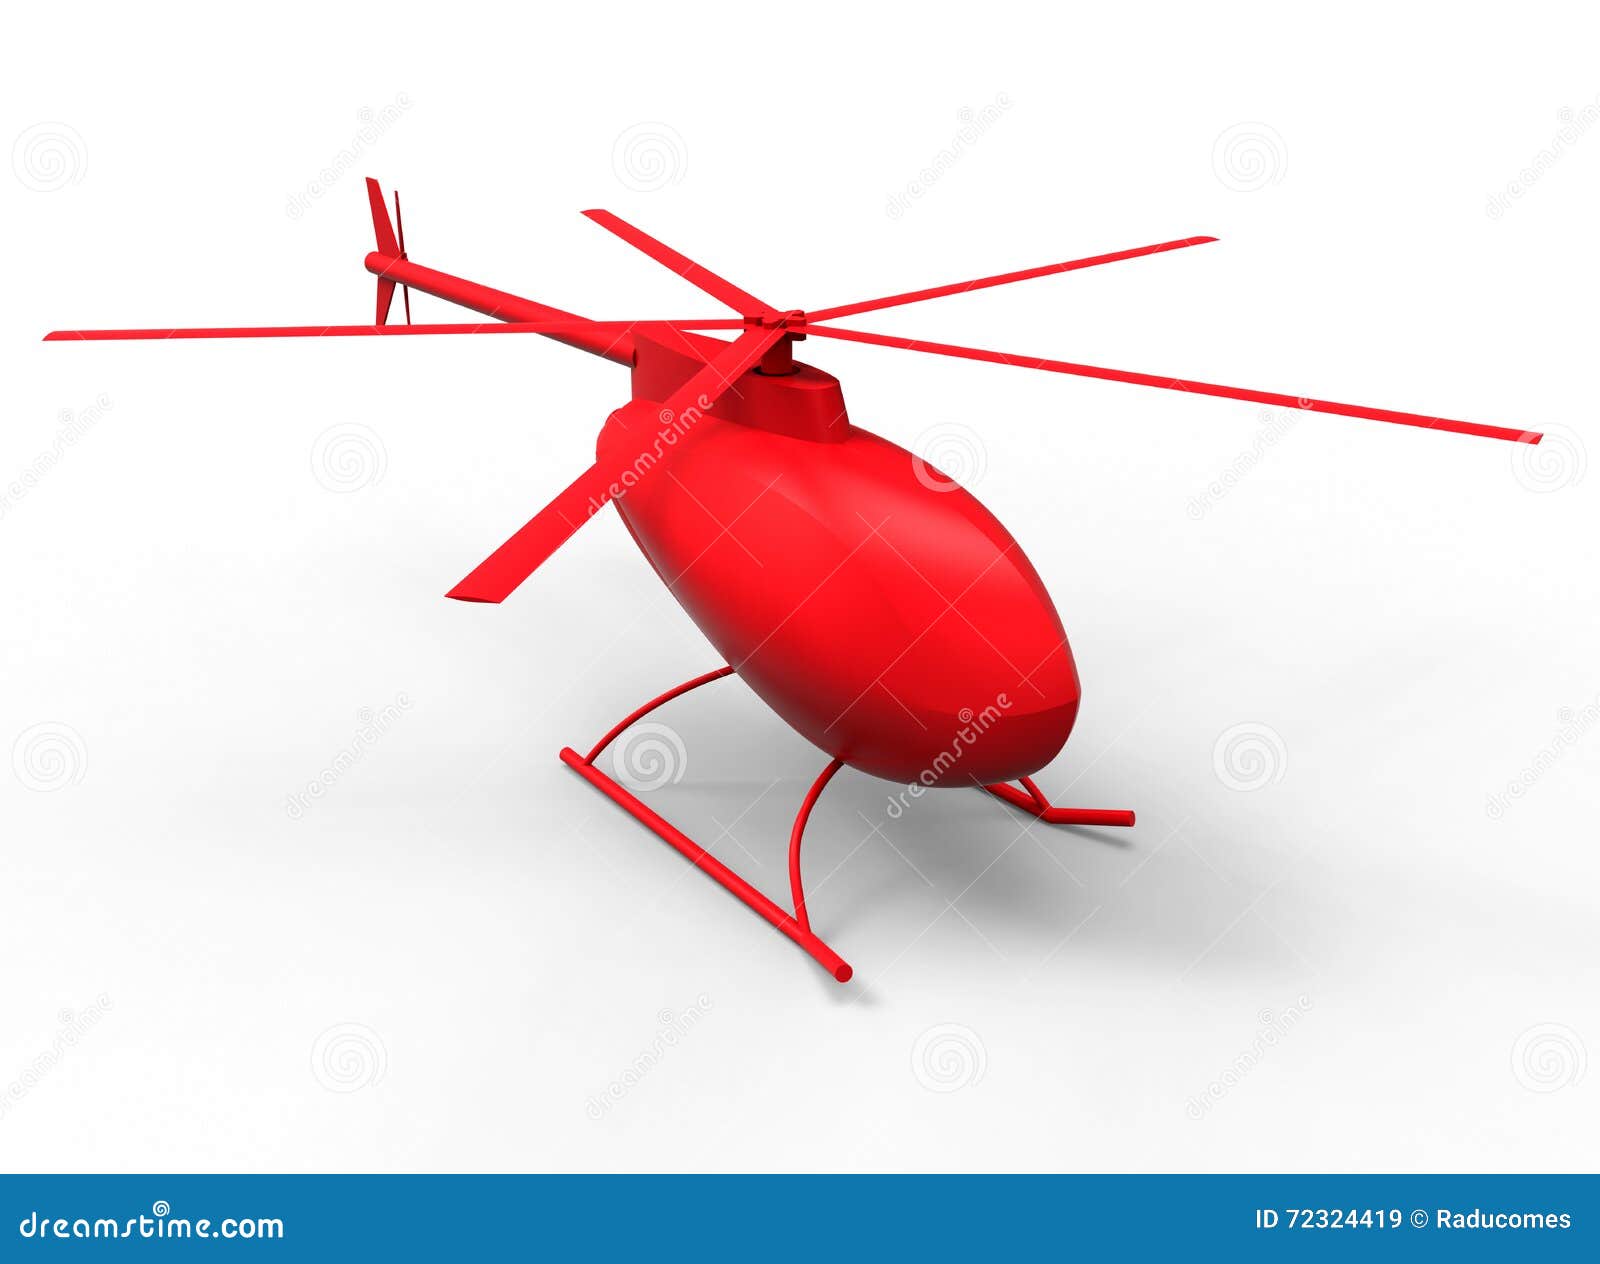 Вертолет муха видео. Муха вертолет. Изделие вертолет Муха. Вертолет Муха модель. Красный вертолет игрушка.